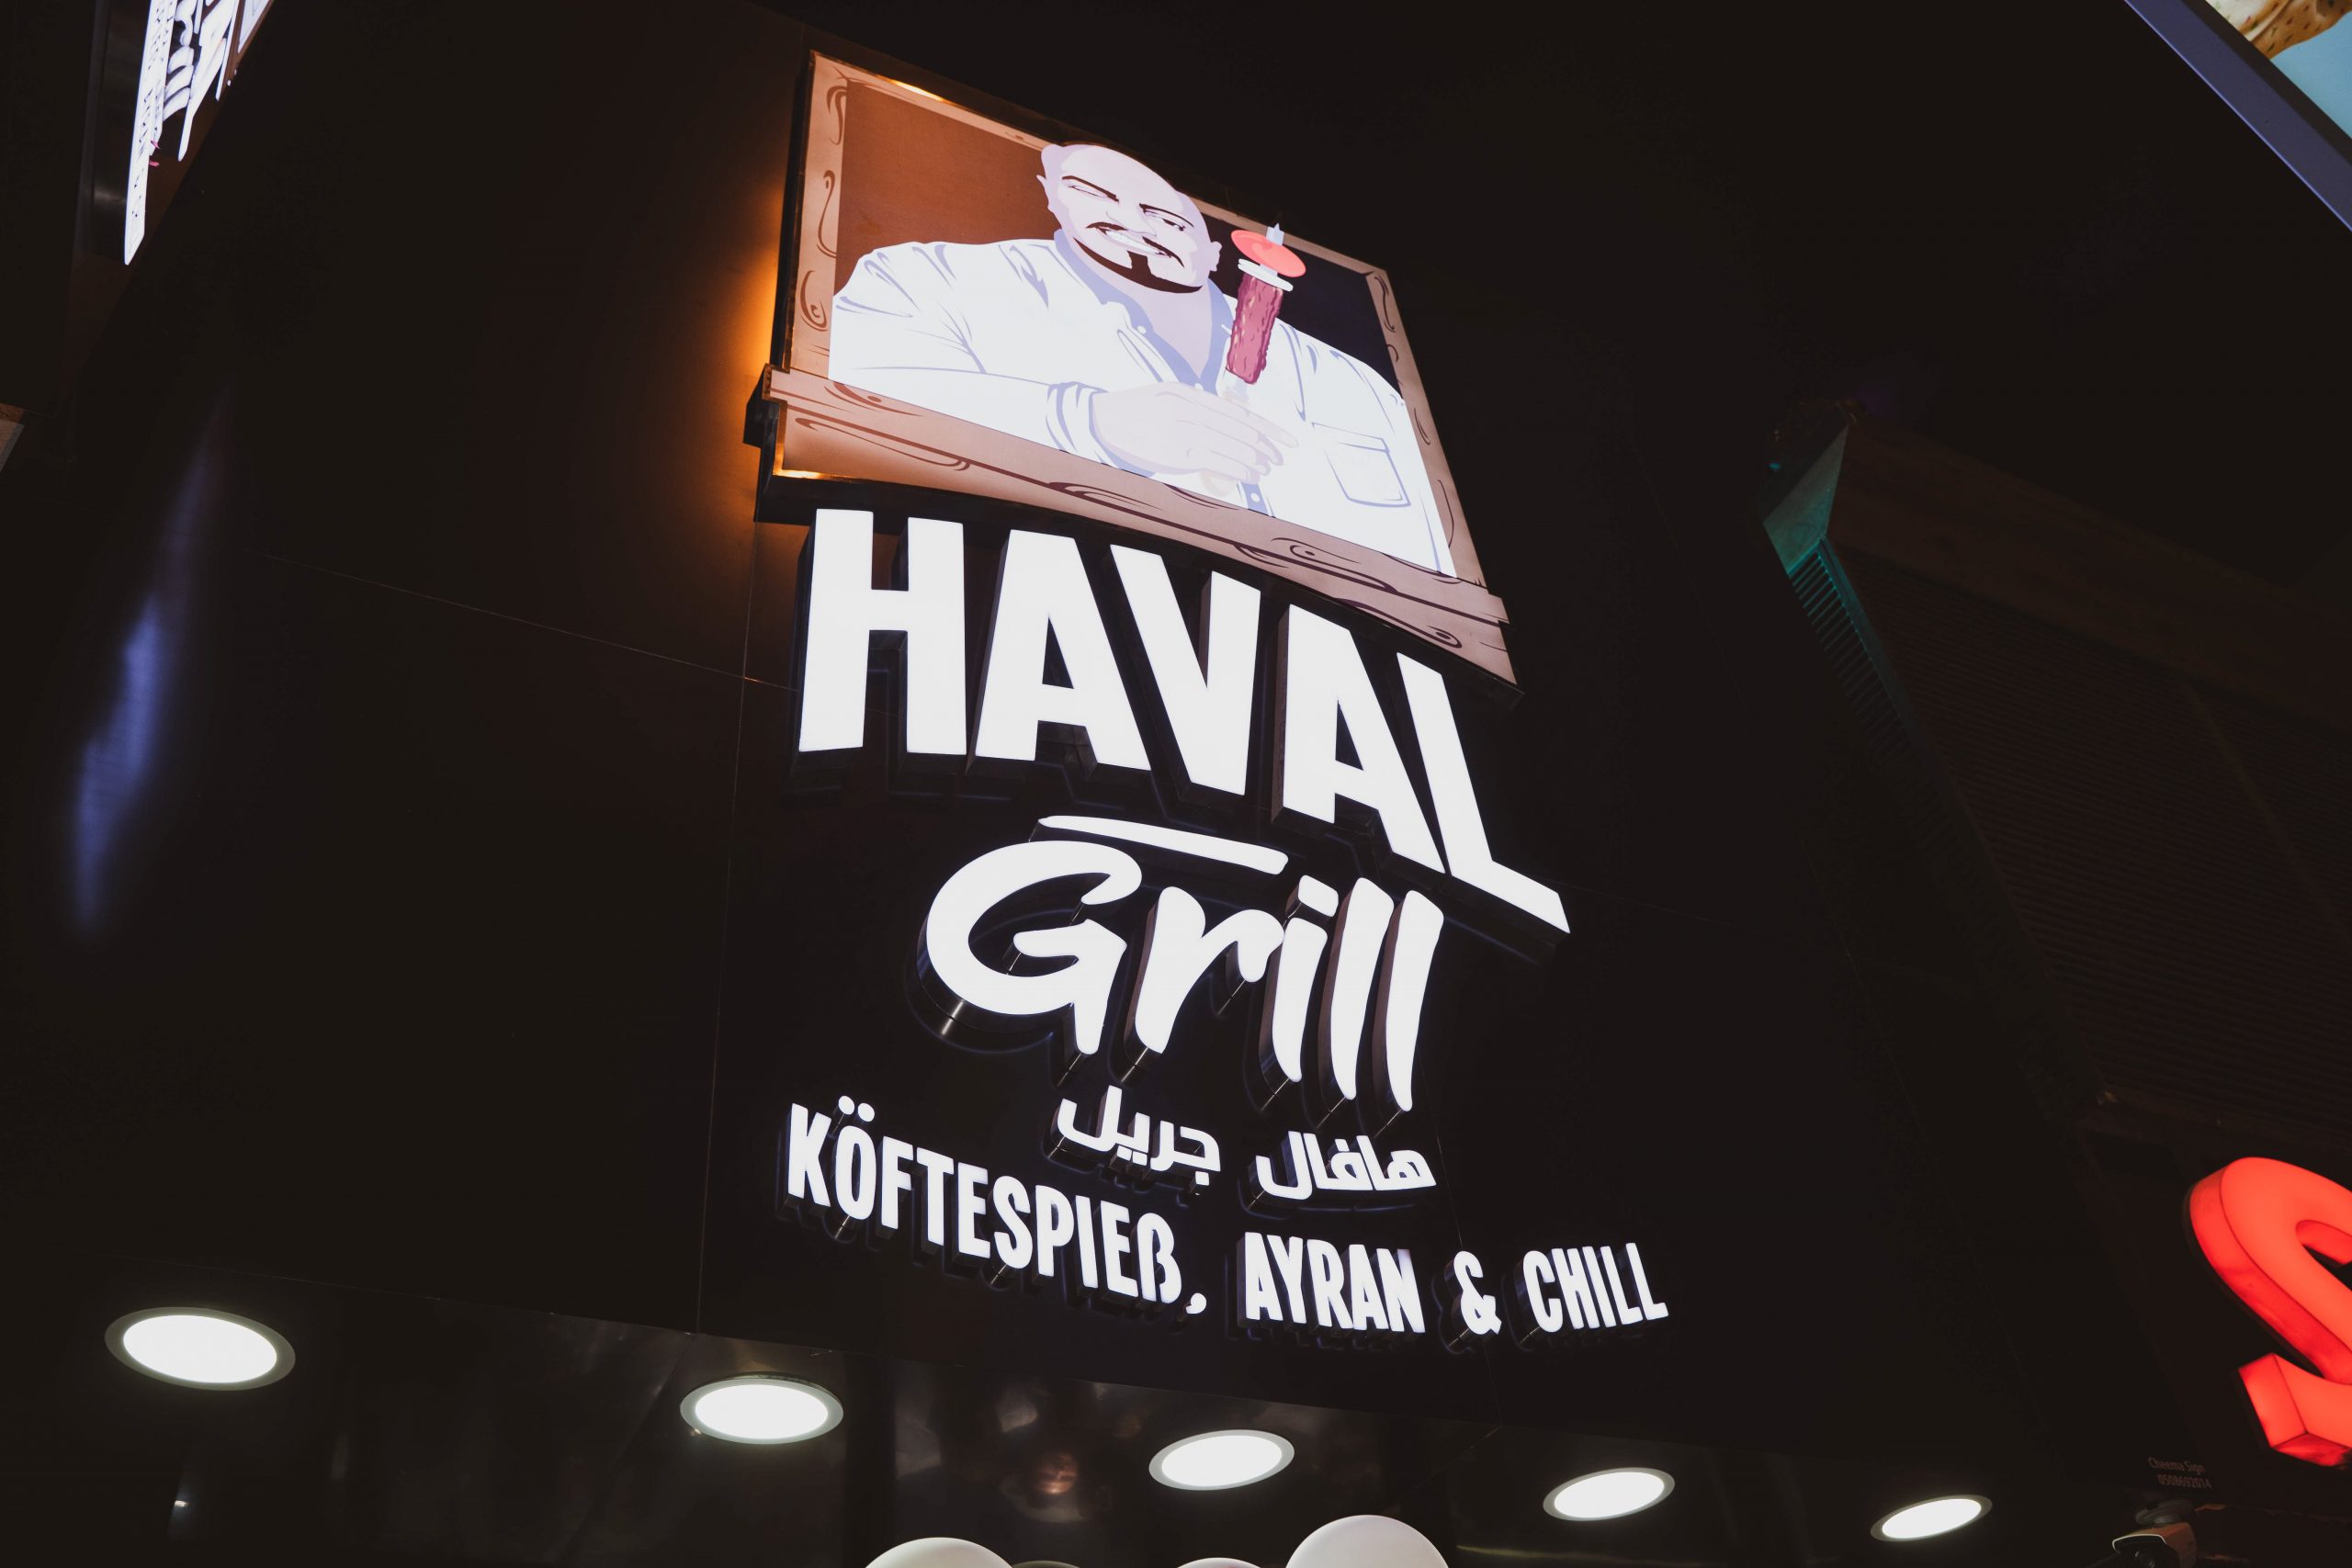 إفتتاح أول فروع مطعم هافال جريل في إمارة دبي